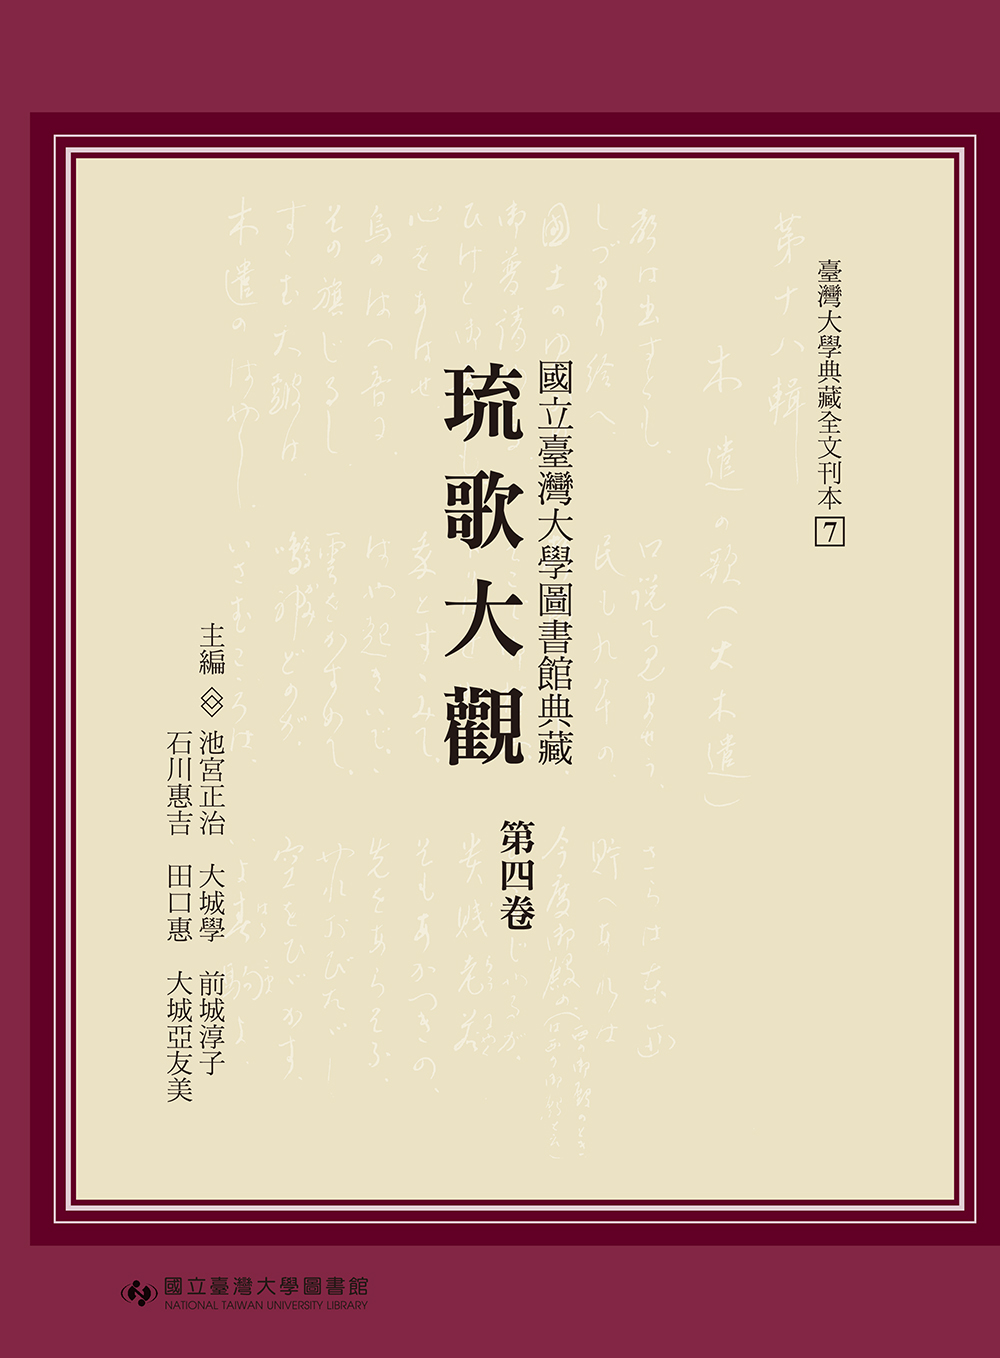 Ryukataikan: A Collection of Ryukyu Songs at National Taiwan University Library: A Transcription, Vol. 4